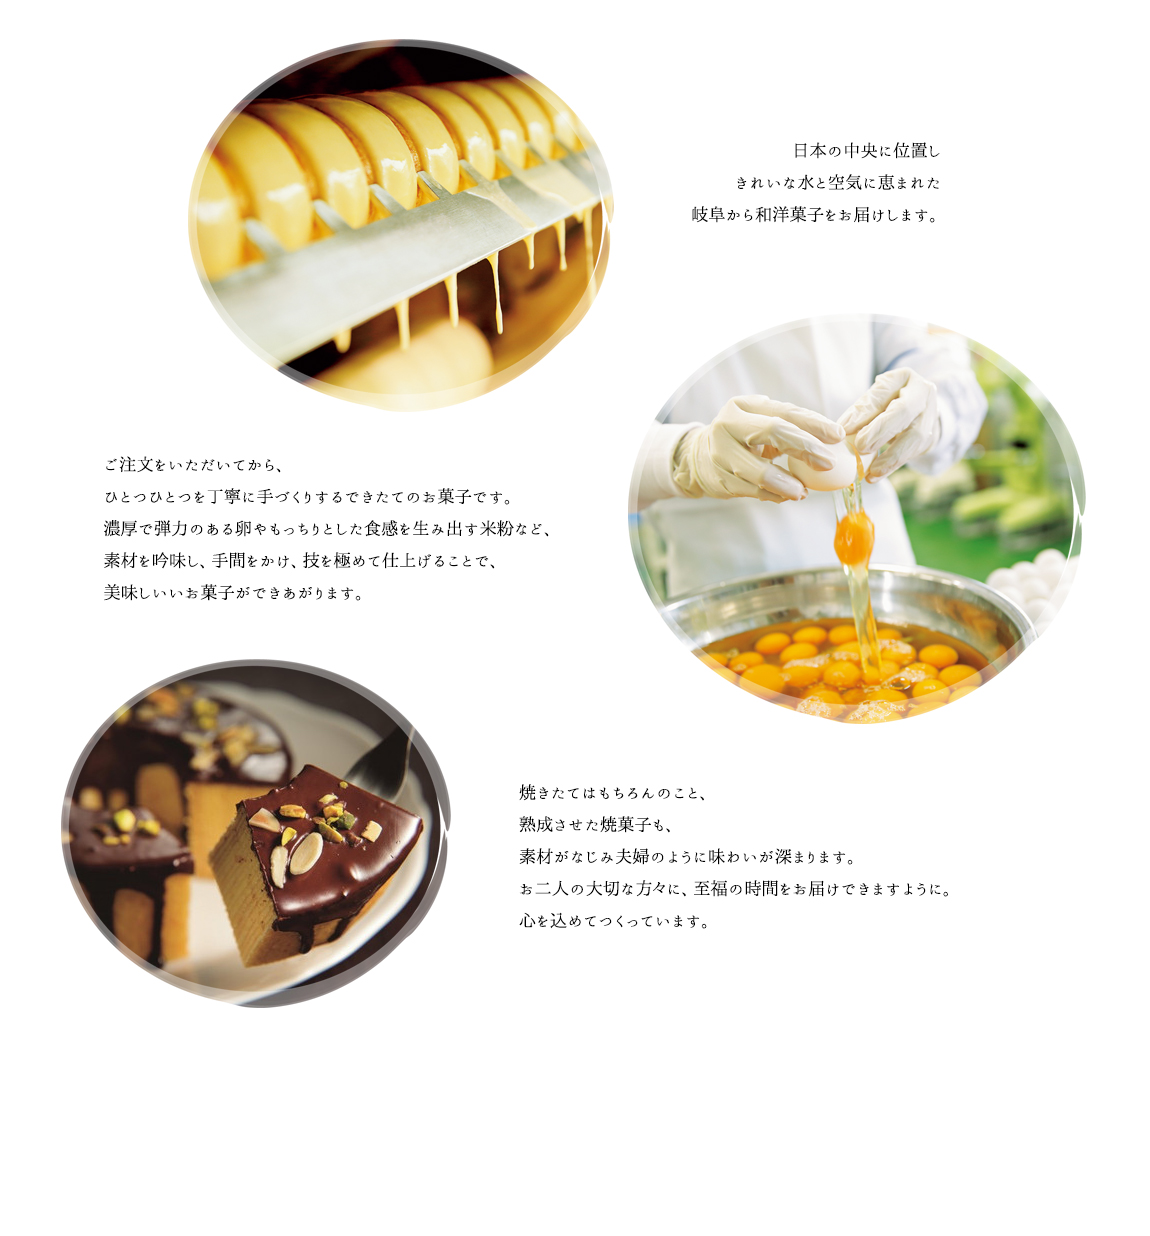 日本の中央に位置しきれいな水と空気に恵まれた岐阜から和洋菓子をお届けします。